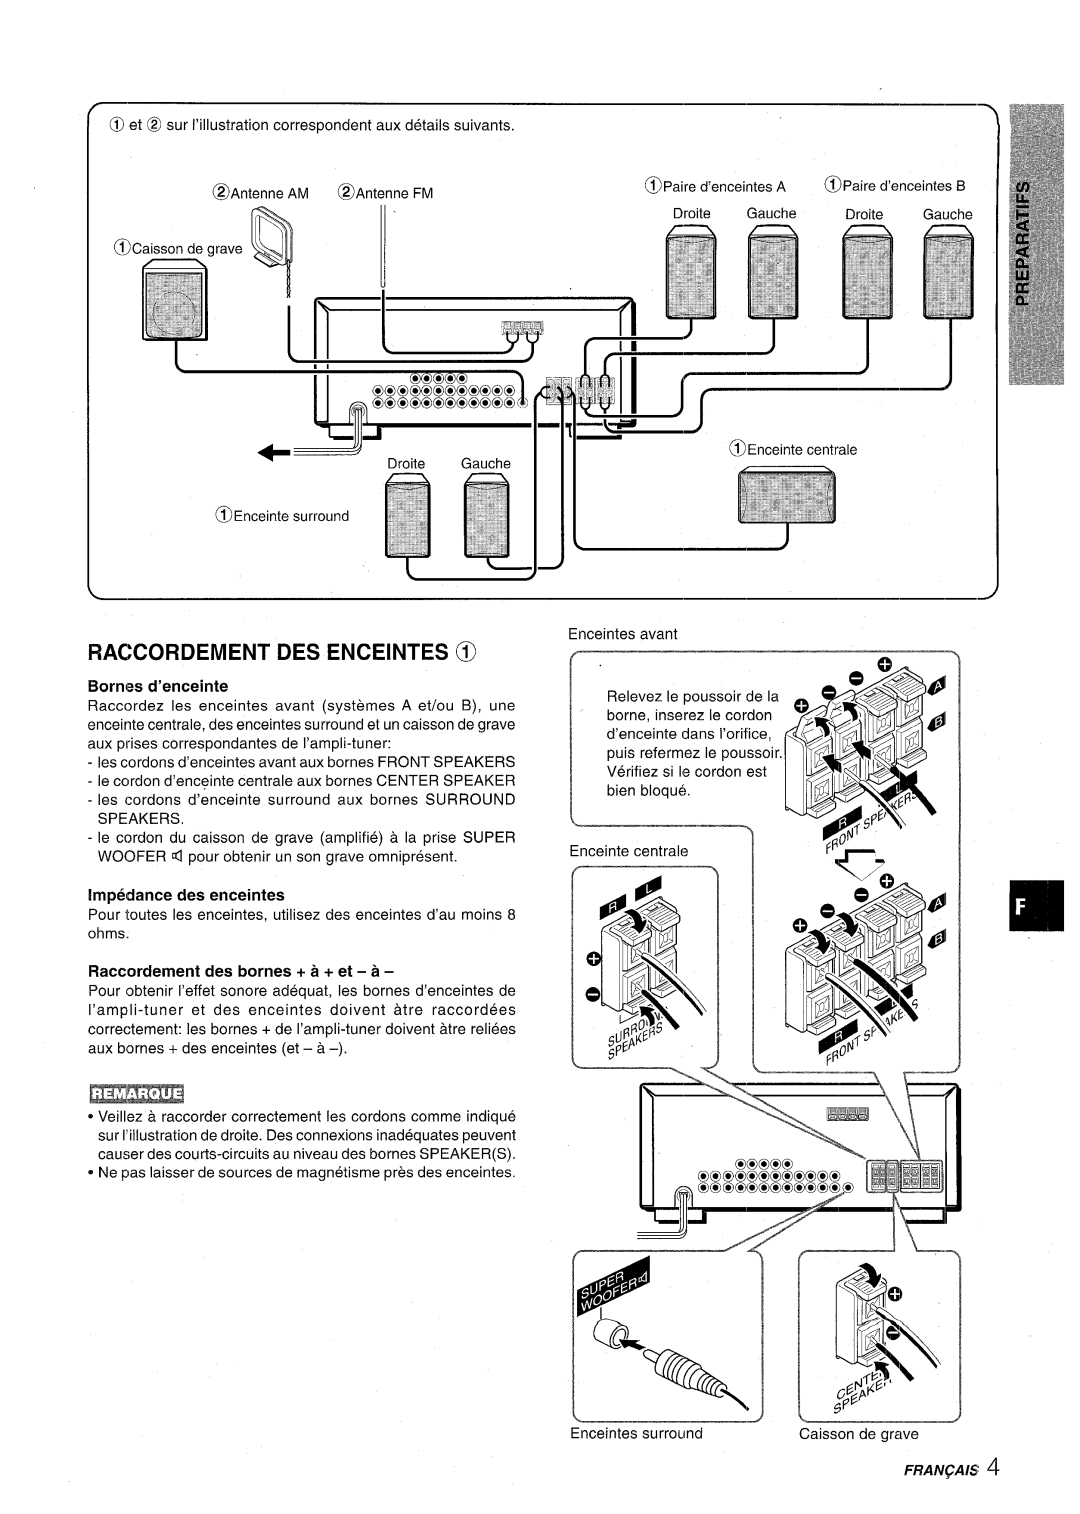 Aiwa AV-D30 manual Raccordement Des Enceintes @, “J-7, Fran~Ais 